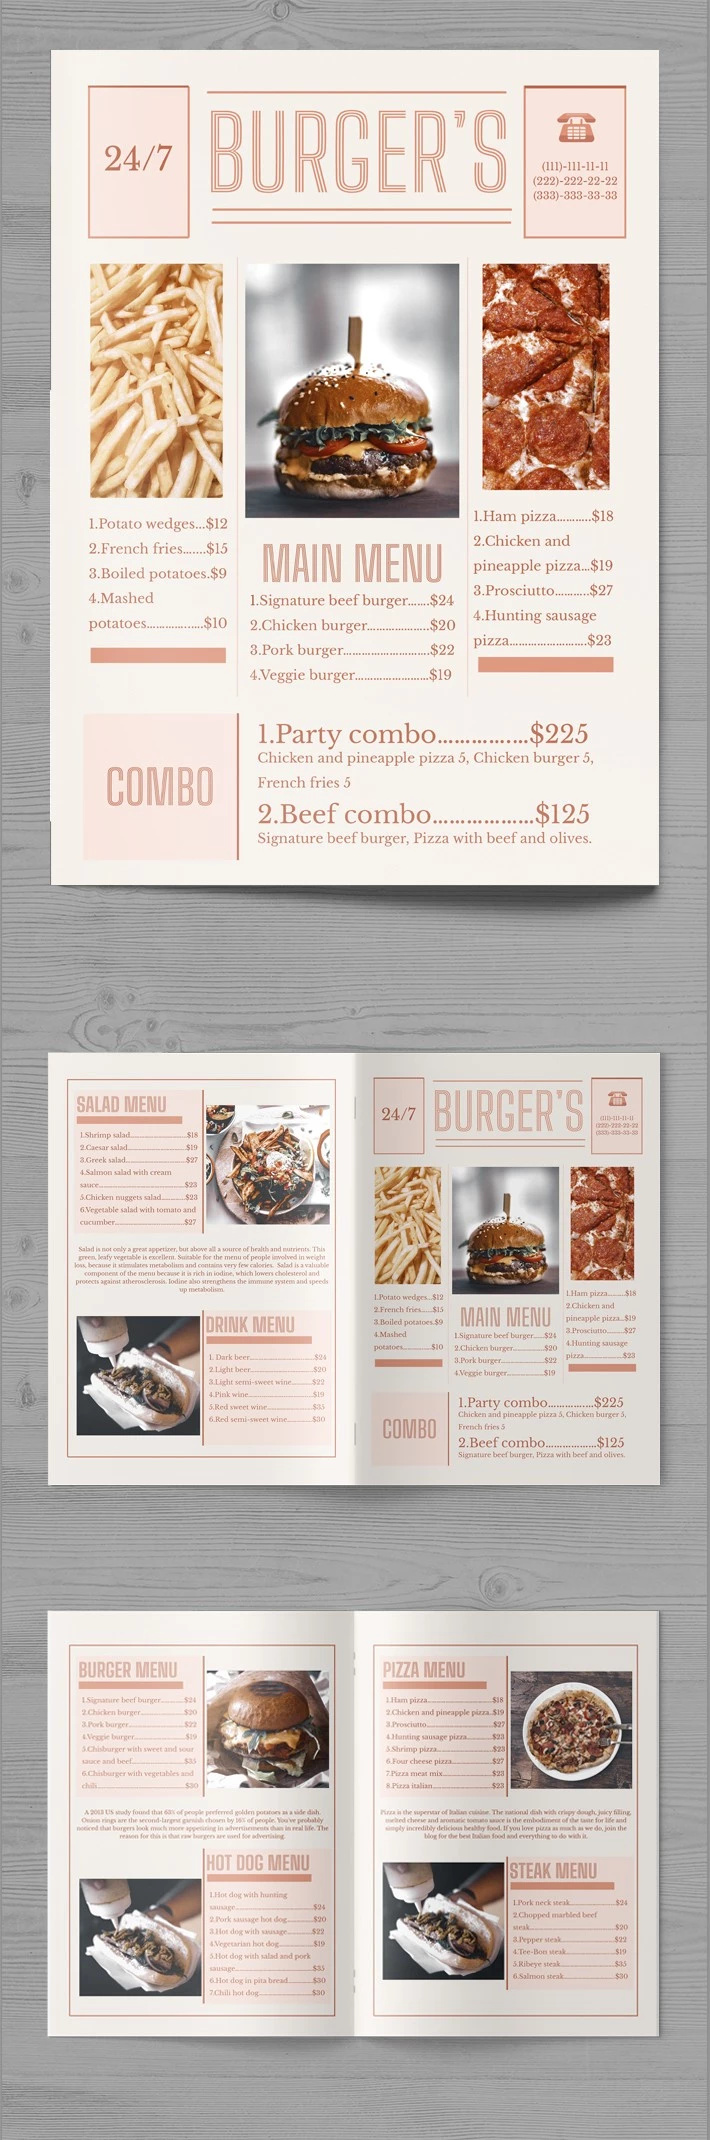 Menú de Burger's en el periódico. - free Google Docs Template - 10061876